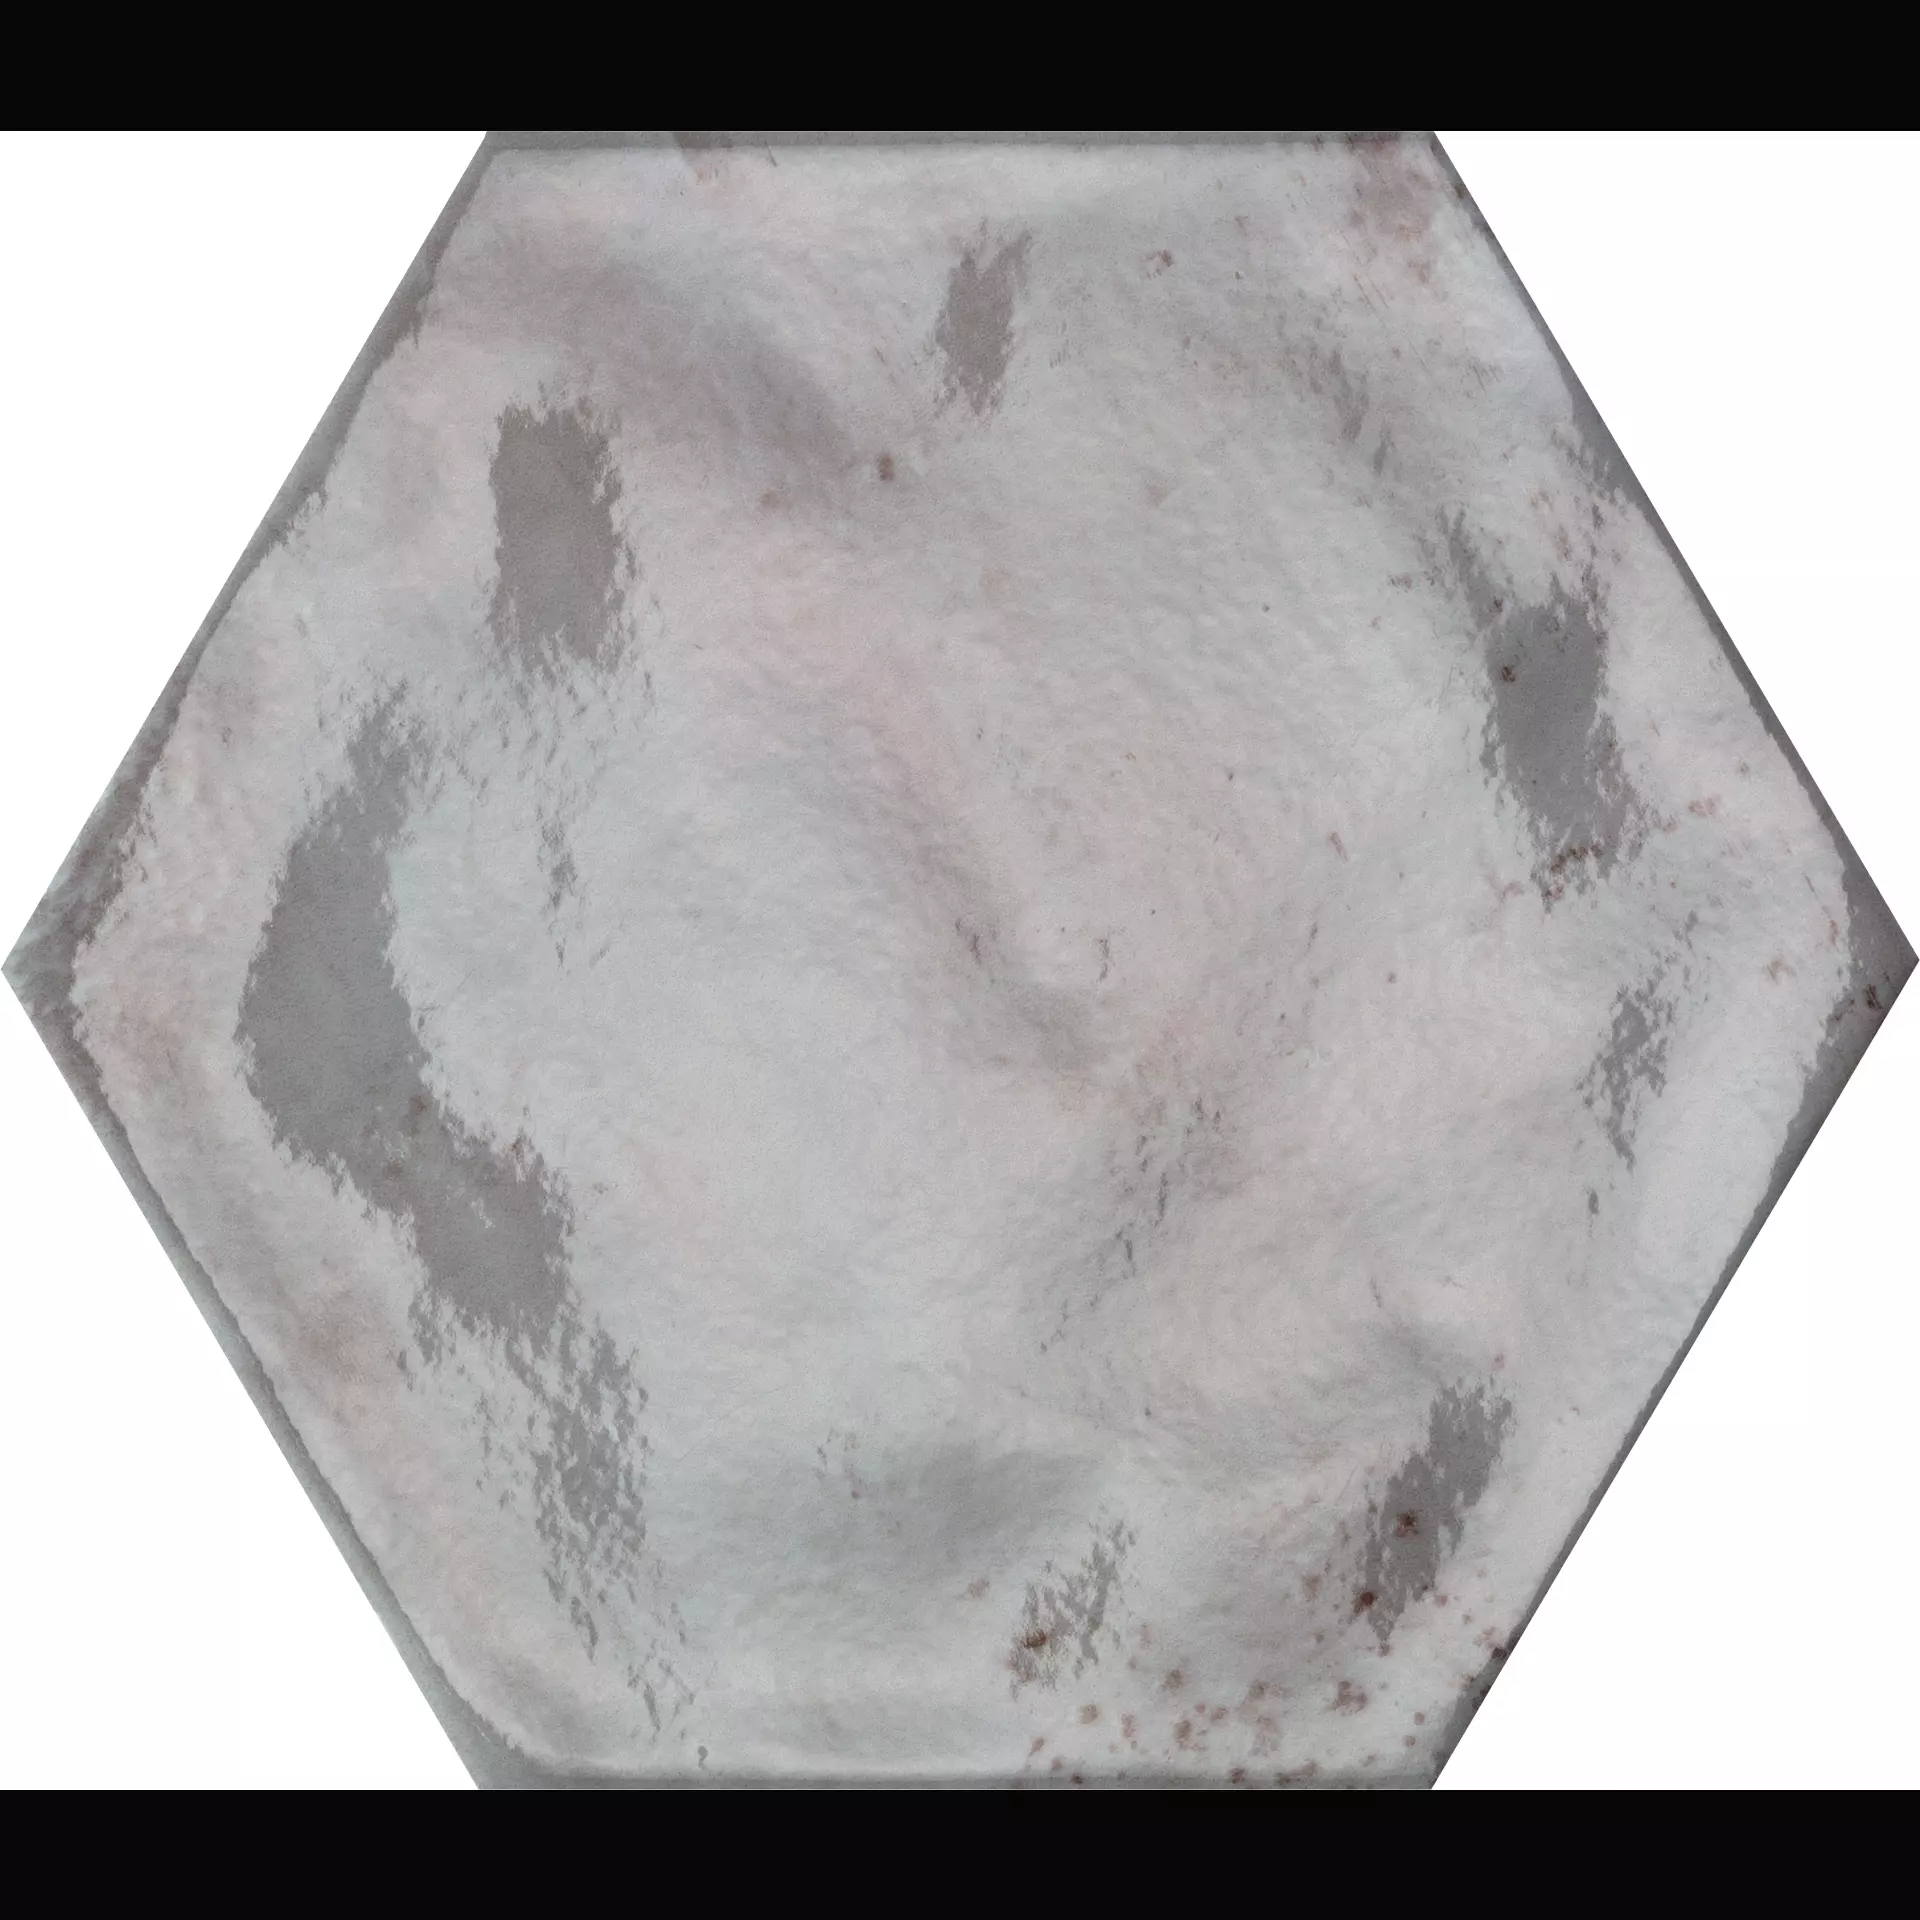 CIR Fuoritono Beige Naturale Hexagon 1072701 24x27,7cm 10mm